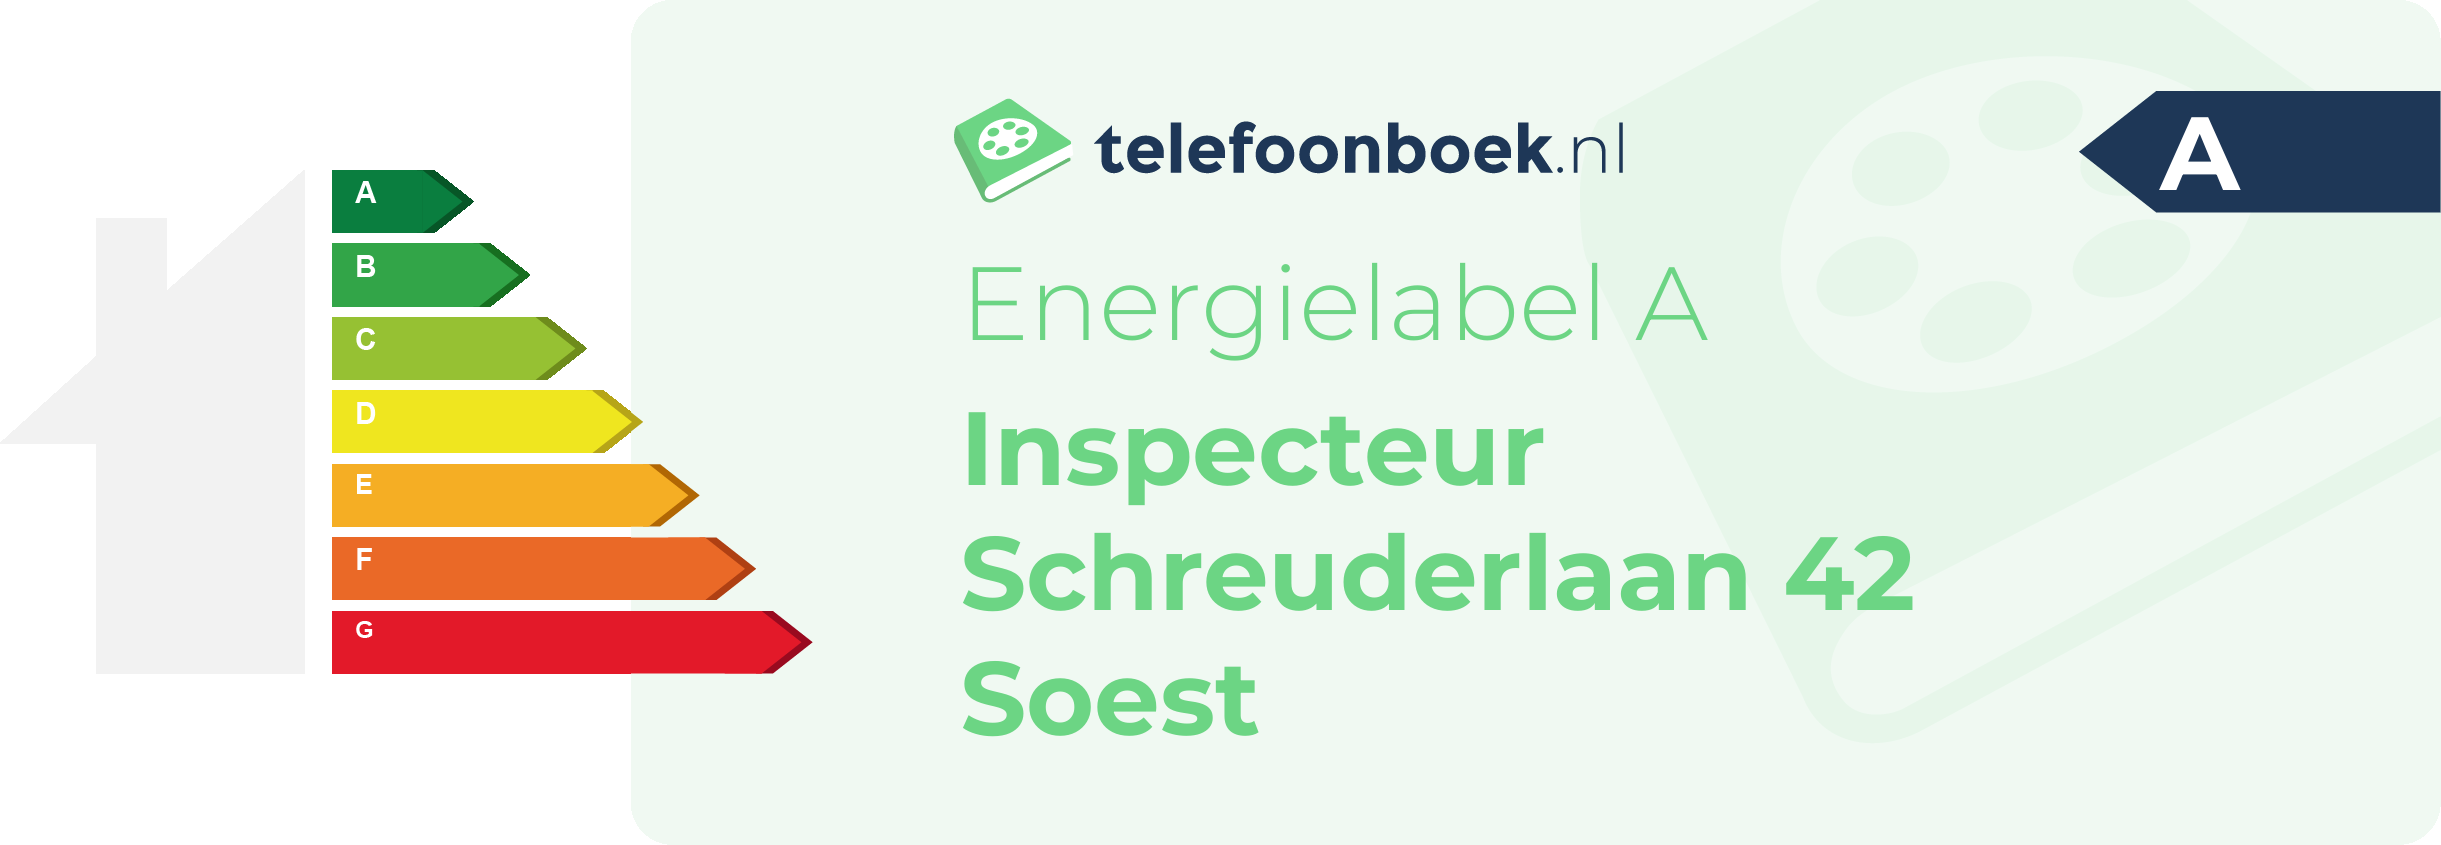 Energielabel Inspecteur Schreuderlaan 42 Soest